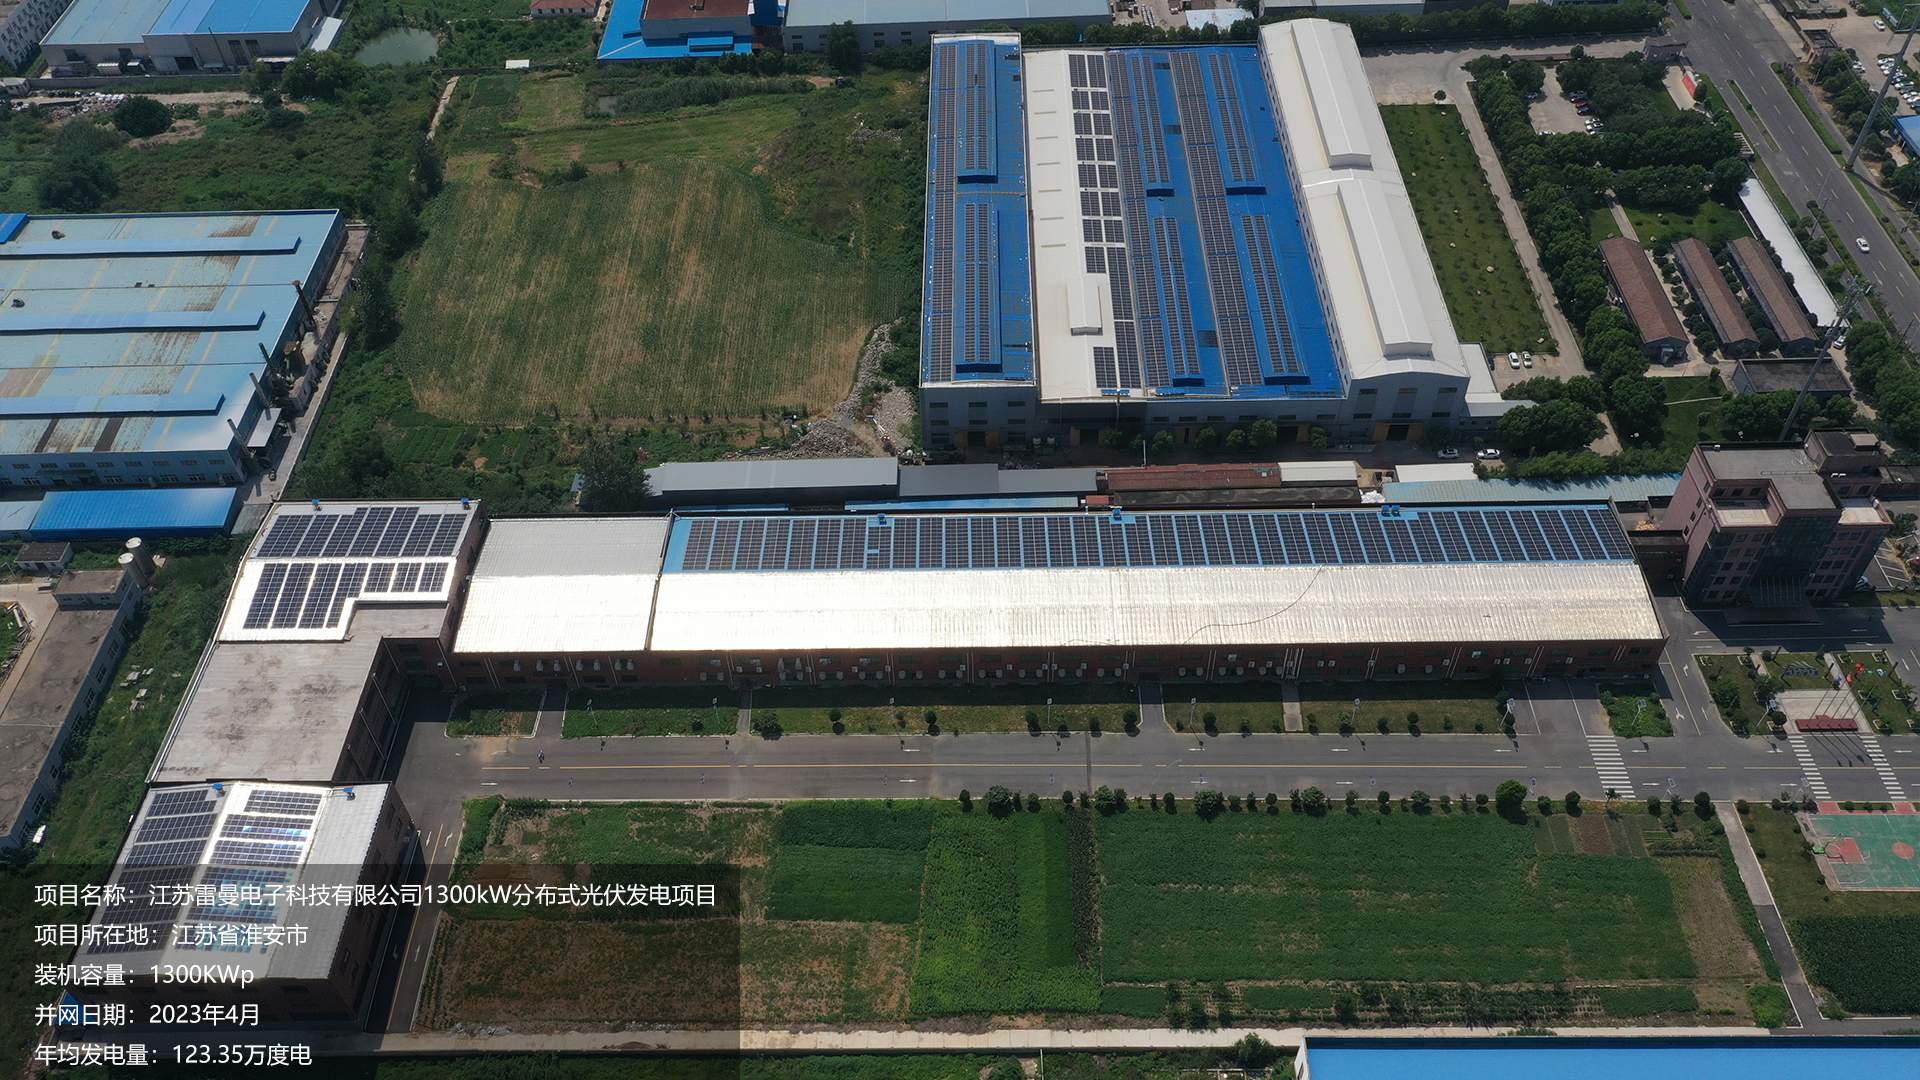 盱眙雷曼电子项目总装机容量1300KW，项目位于江苏省淮安市，于2023年4月并网发电，年均发电量约123万度。